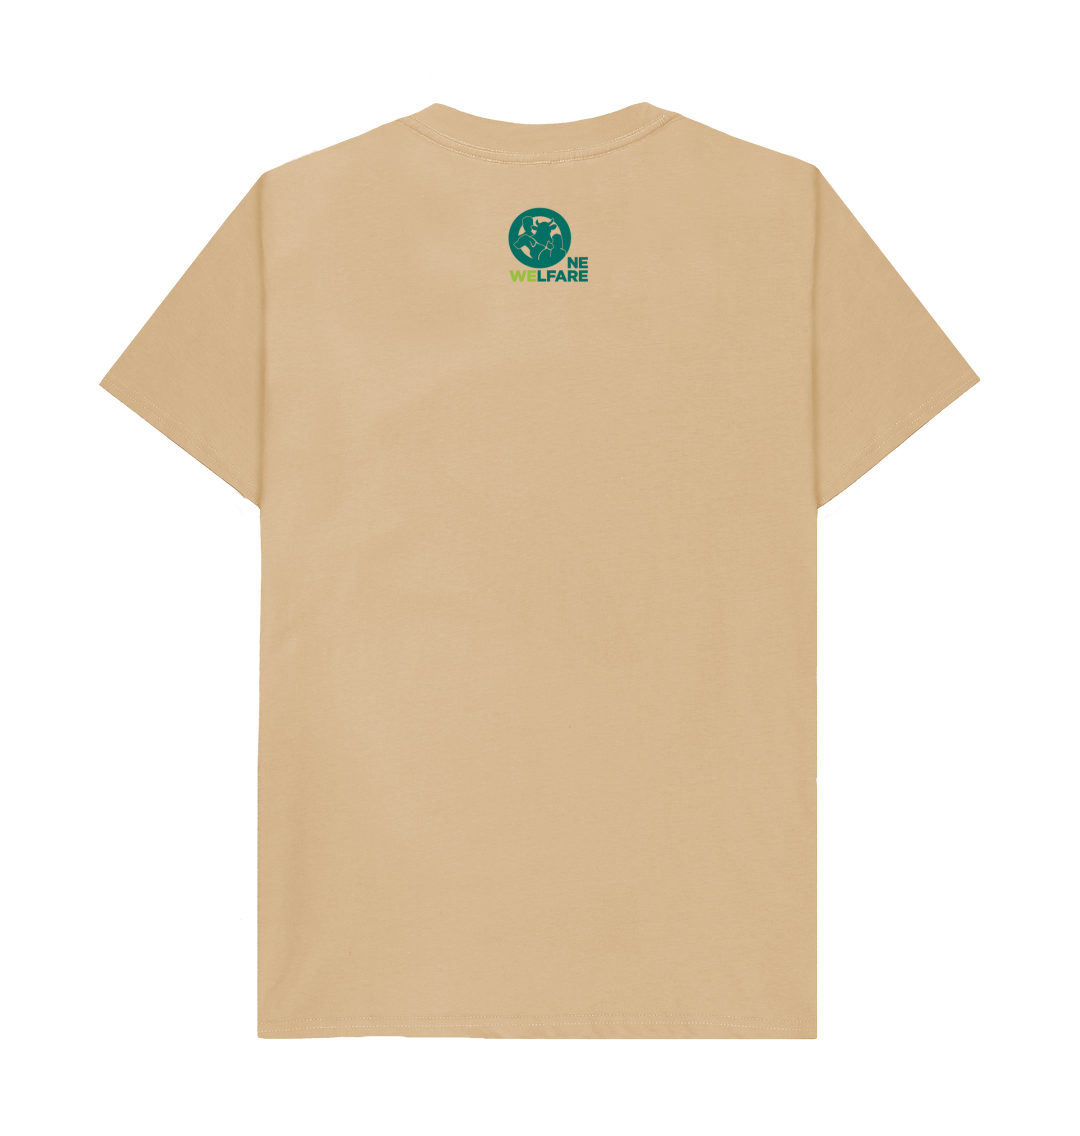 Basics - Men's Ethical T-shirt